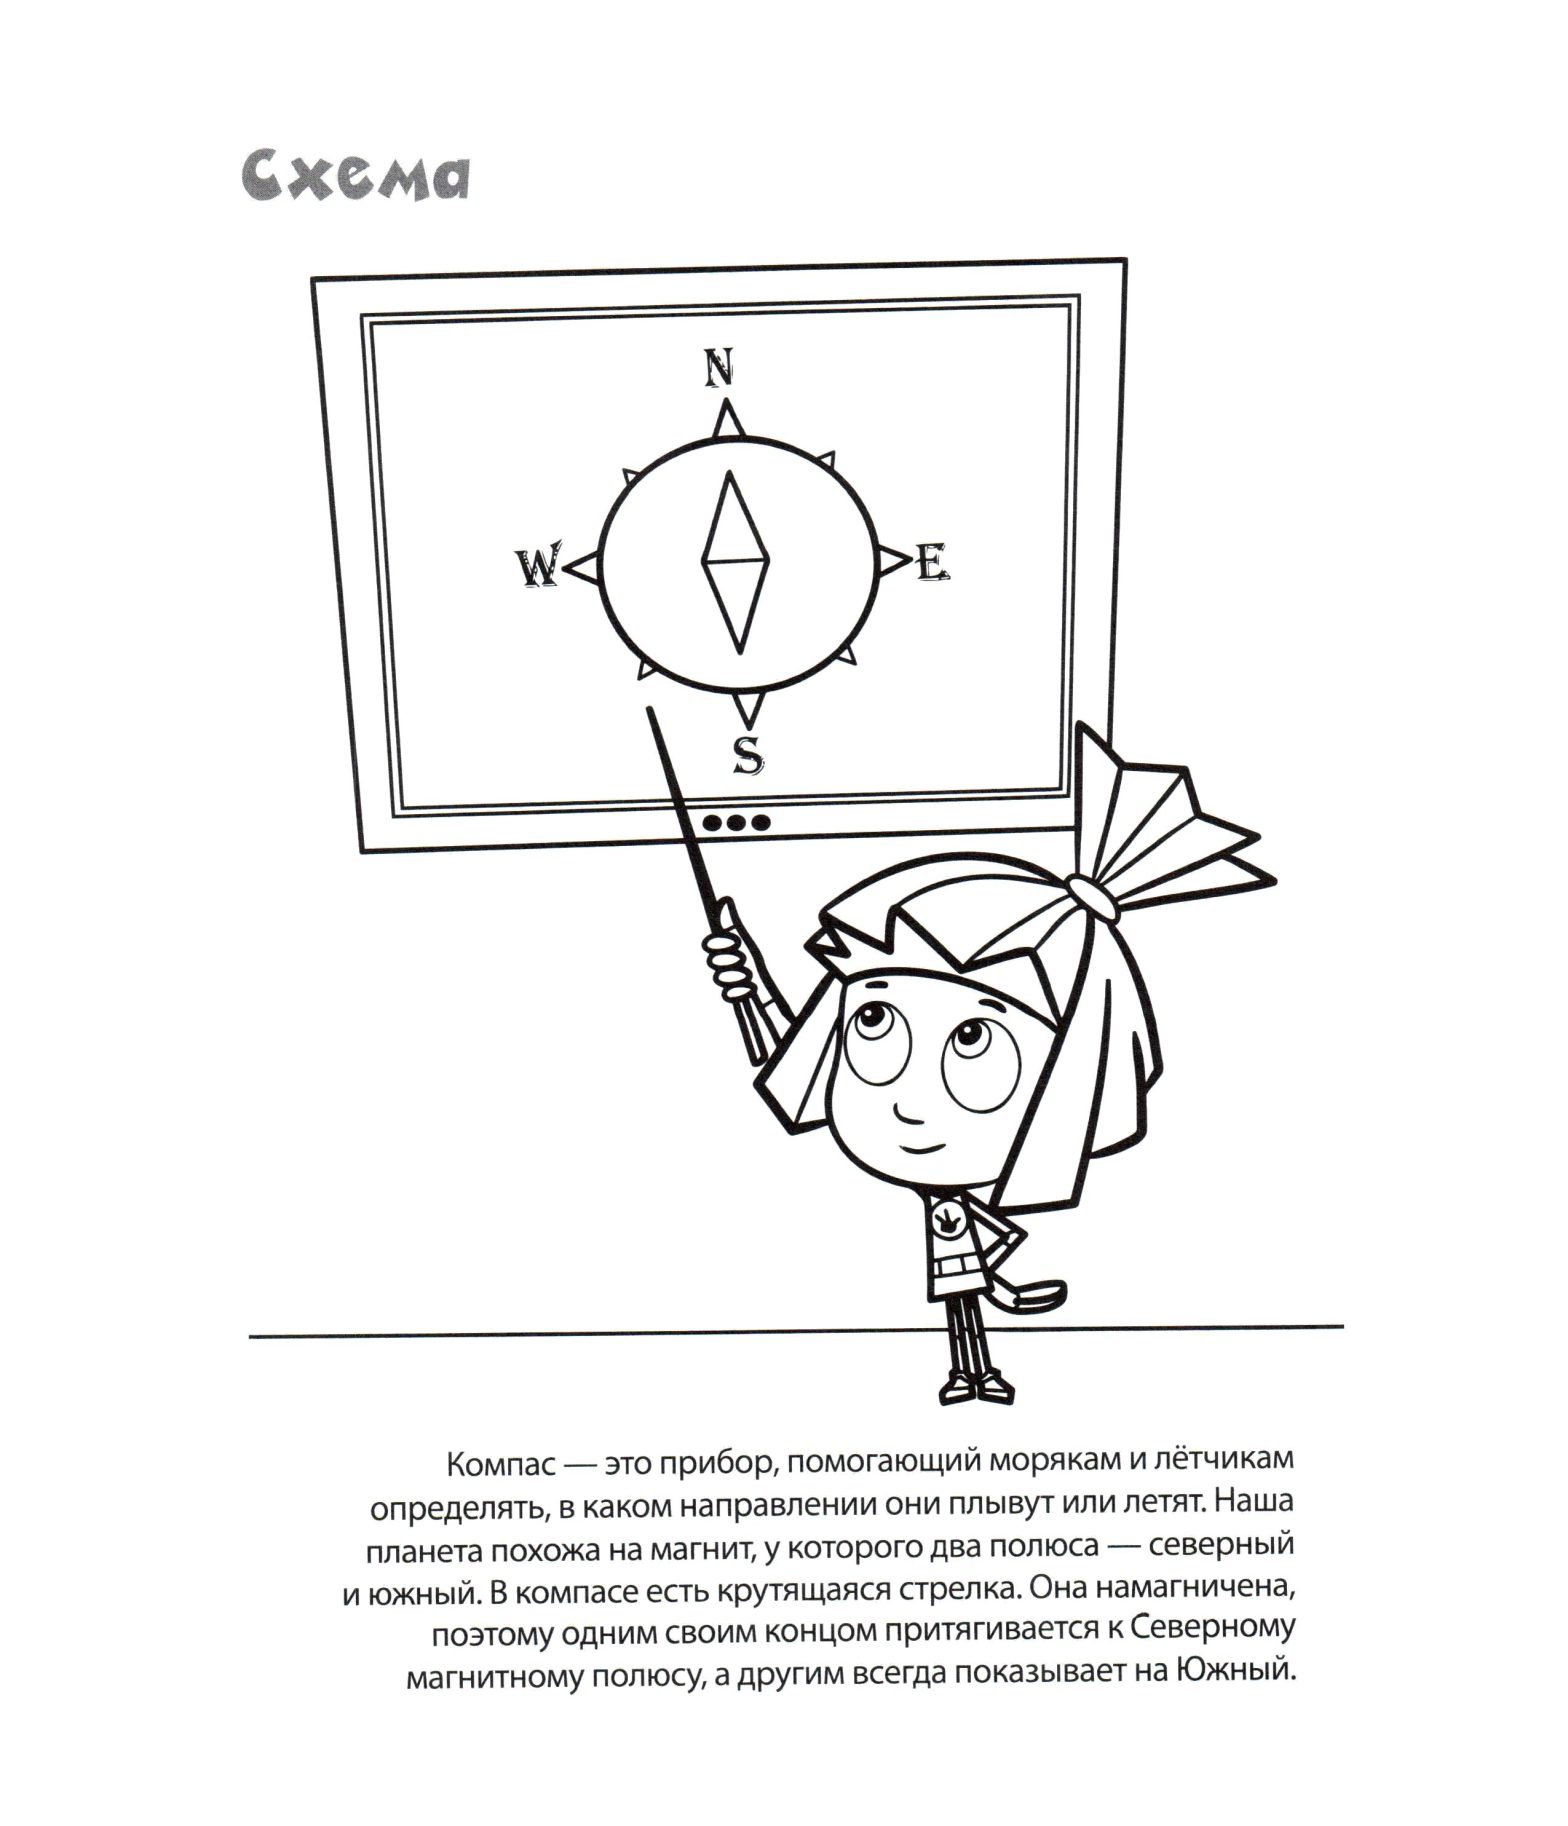 Раскраска с изображением Симки из мультфильма Фиксики для девочек (Фиксики, Симка)